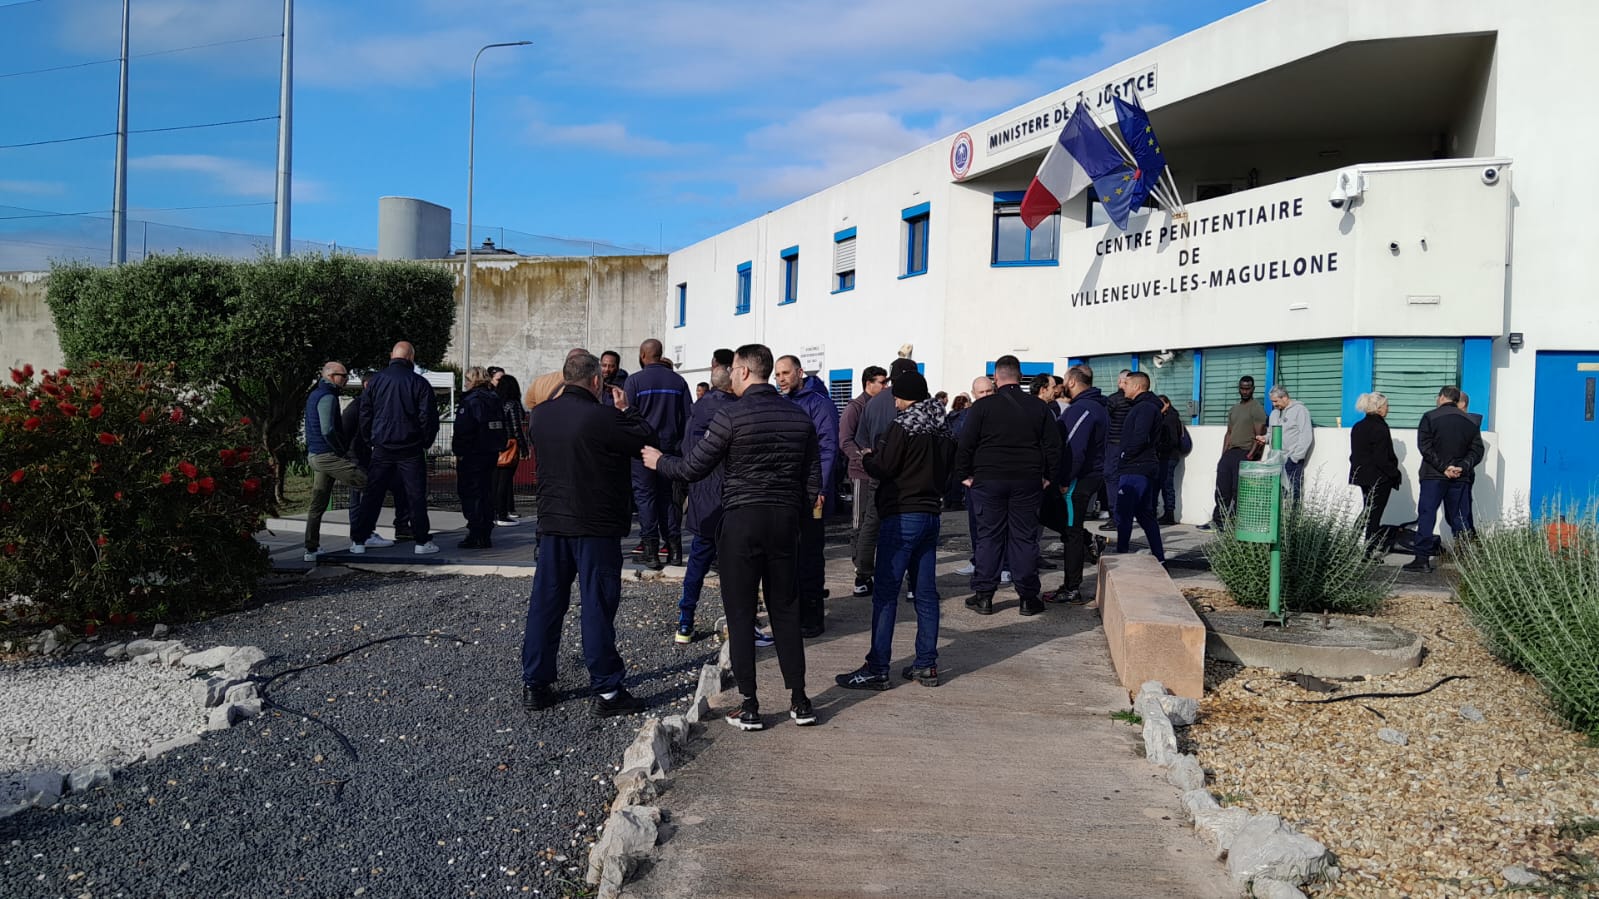 Journée "prison morte" ici à Villeneuve-les-Maguelone (Hérault) ce mercredi matin. Photo Twitter/FO Justice